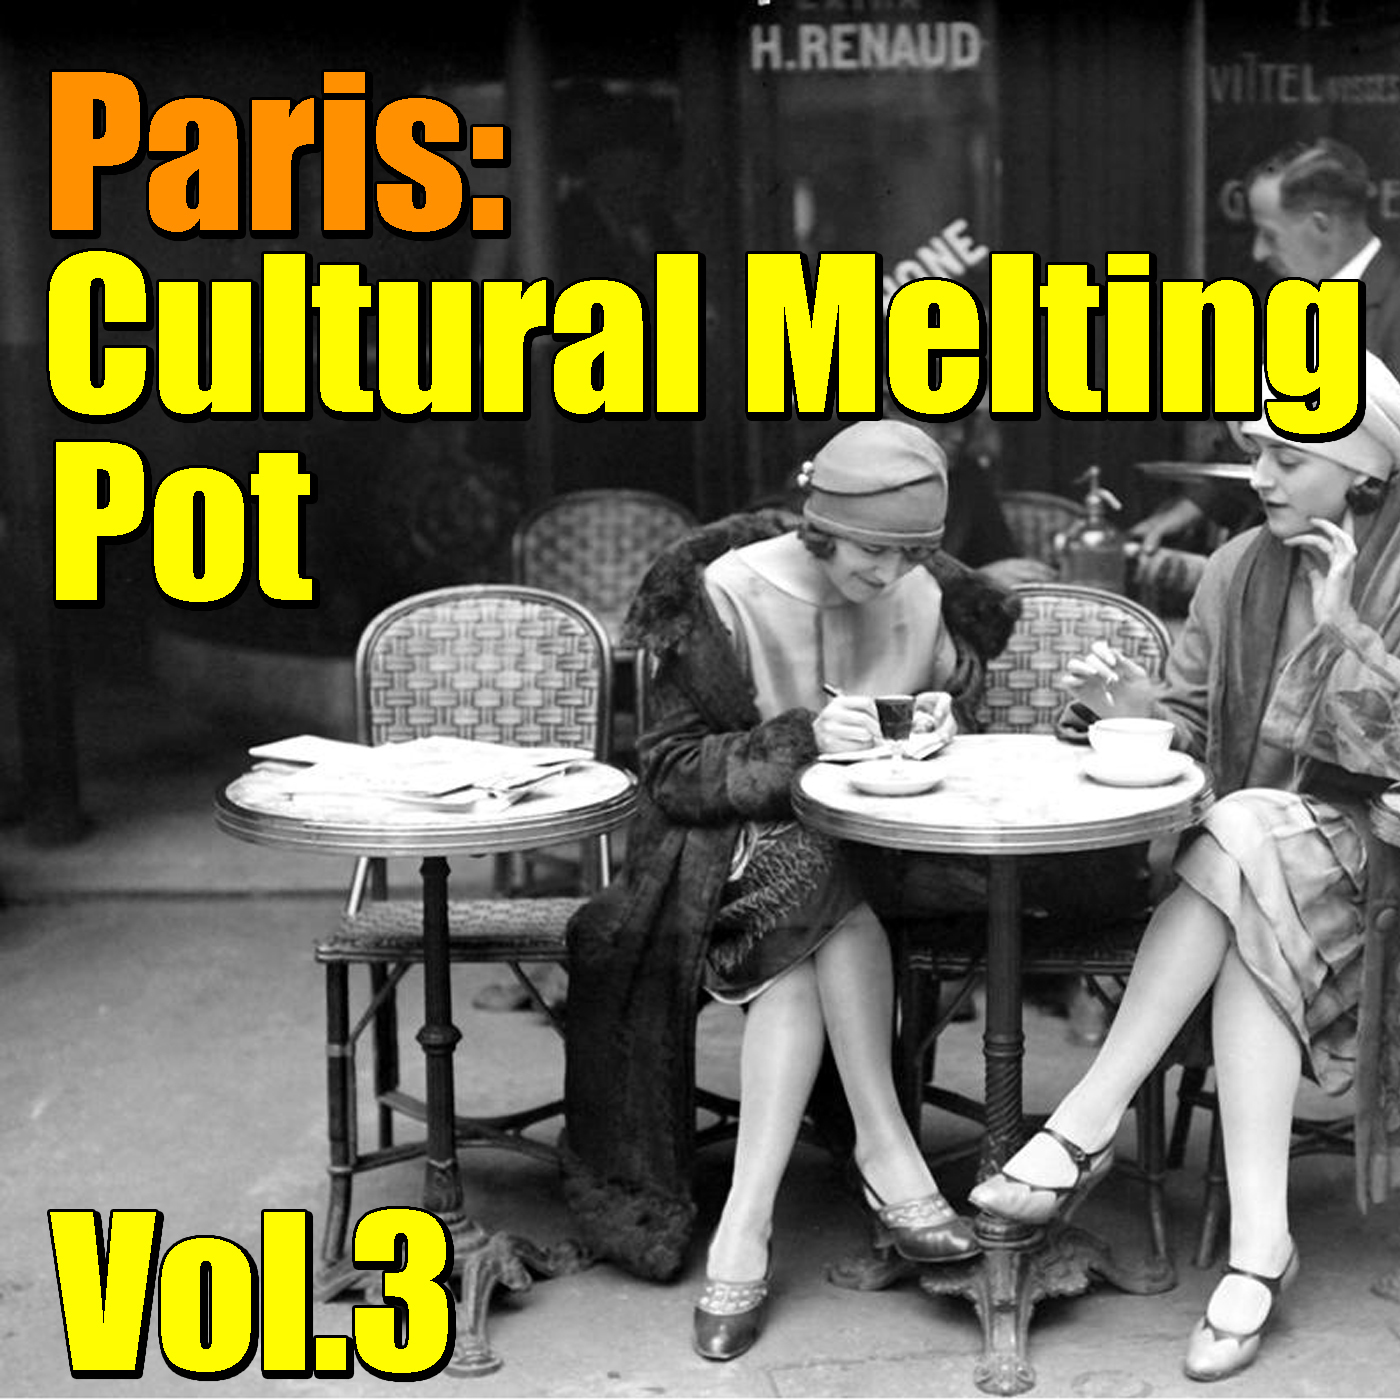 Paris: Cultural Melting Pot, Vol.3